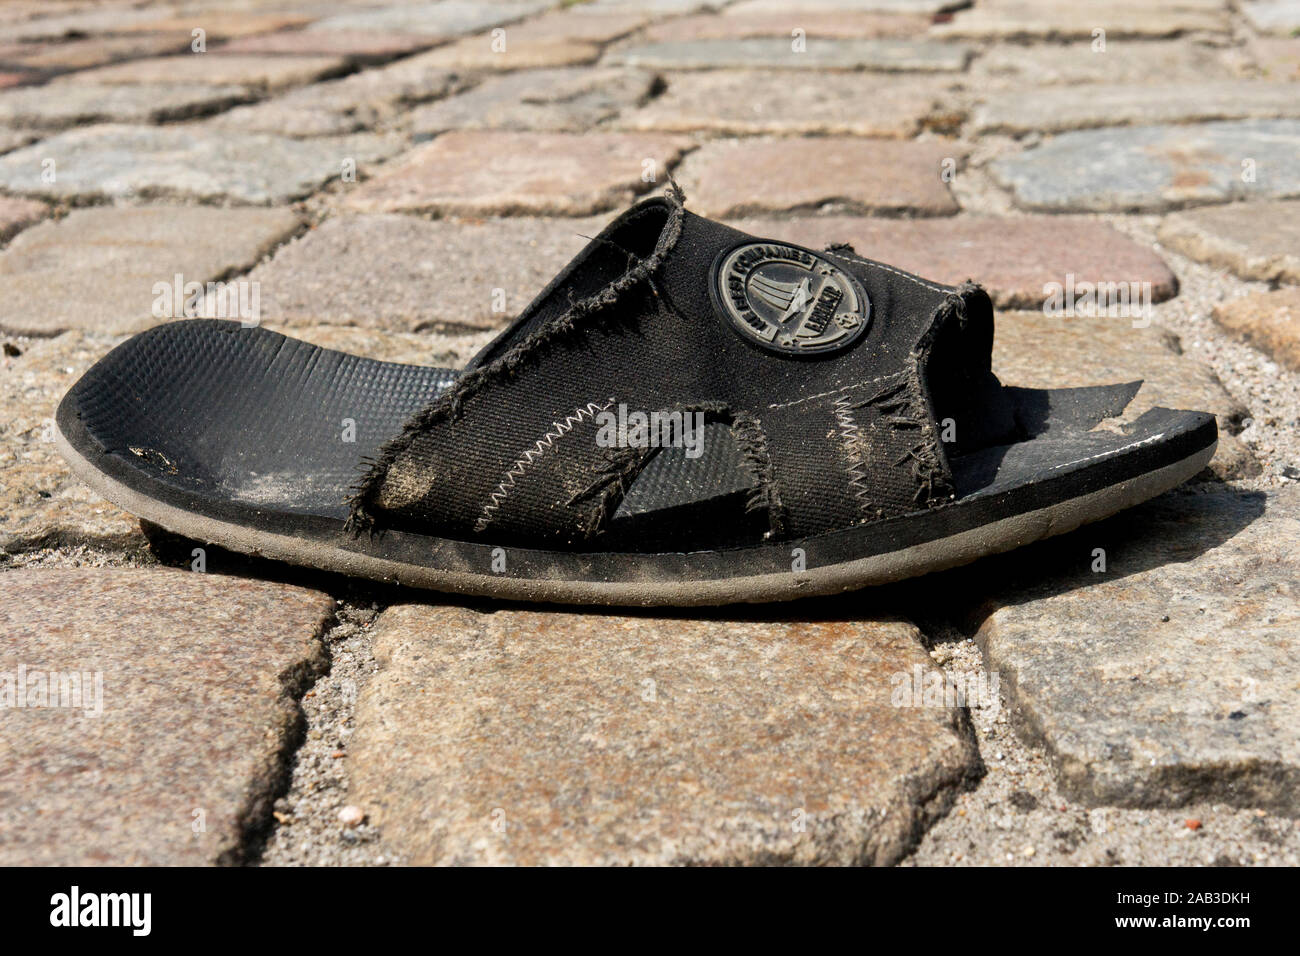 Eine alte Sandale liegt auf der Strasse |An old sandal is on the road| Stock Photo